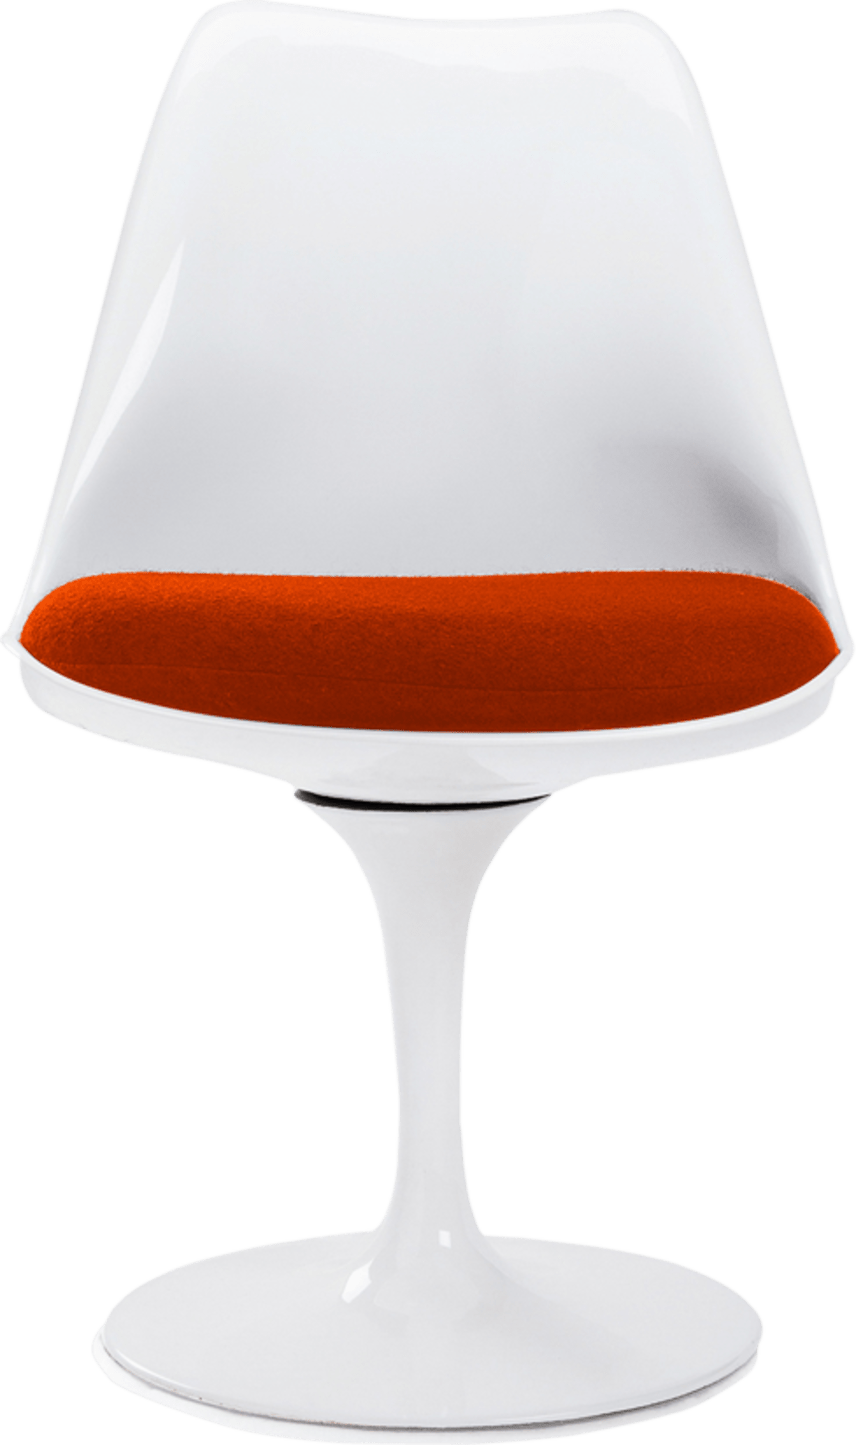 Silla Tulip - Fibra de vidrio Orange/White image.